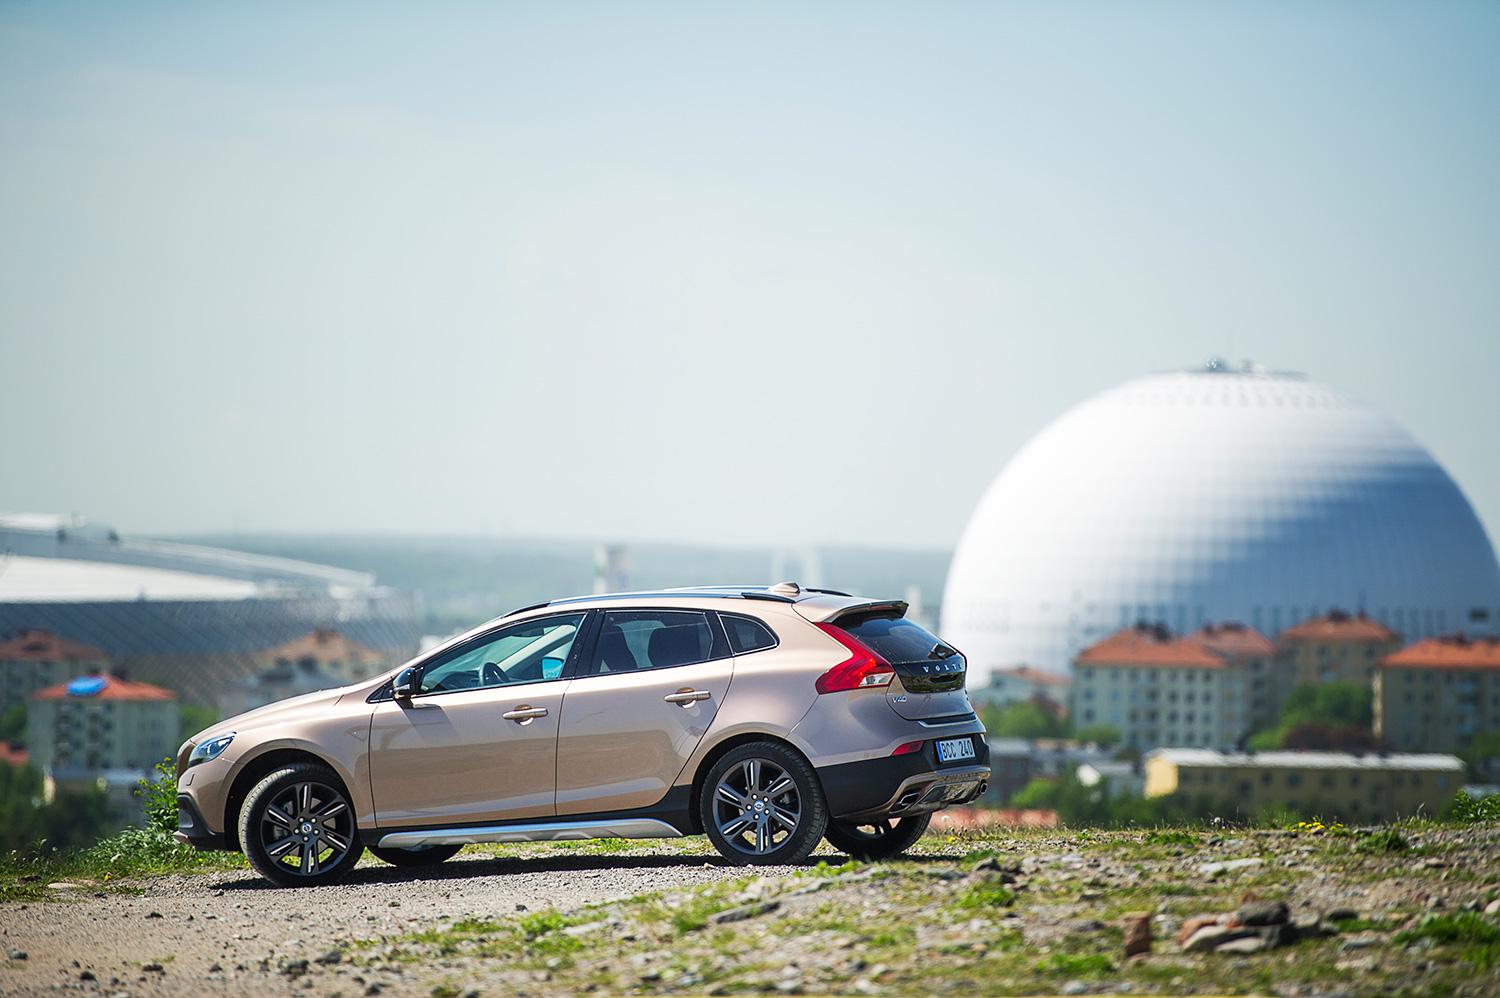 "Volvo har byggt en bil som ser in i framtiden"